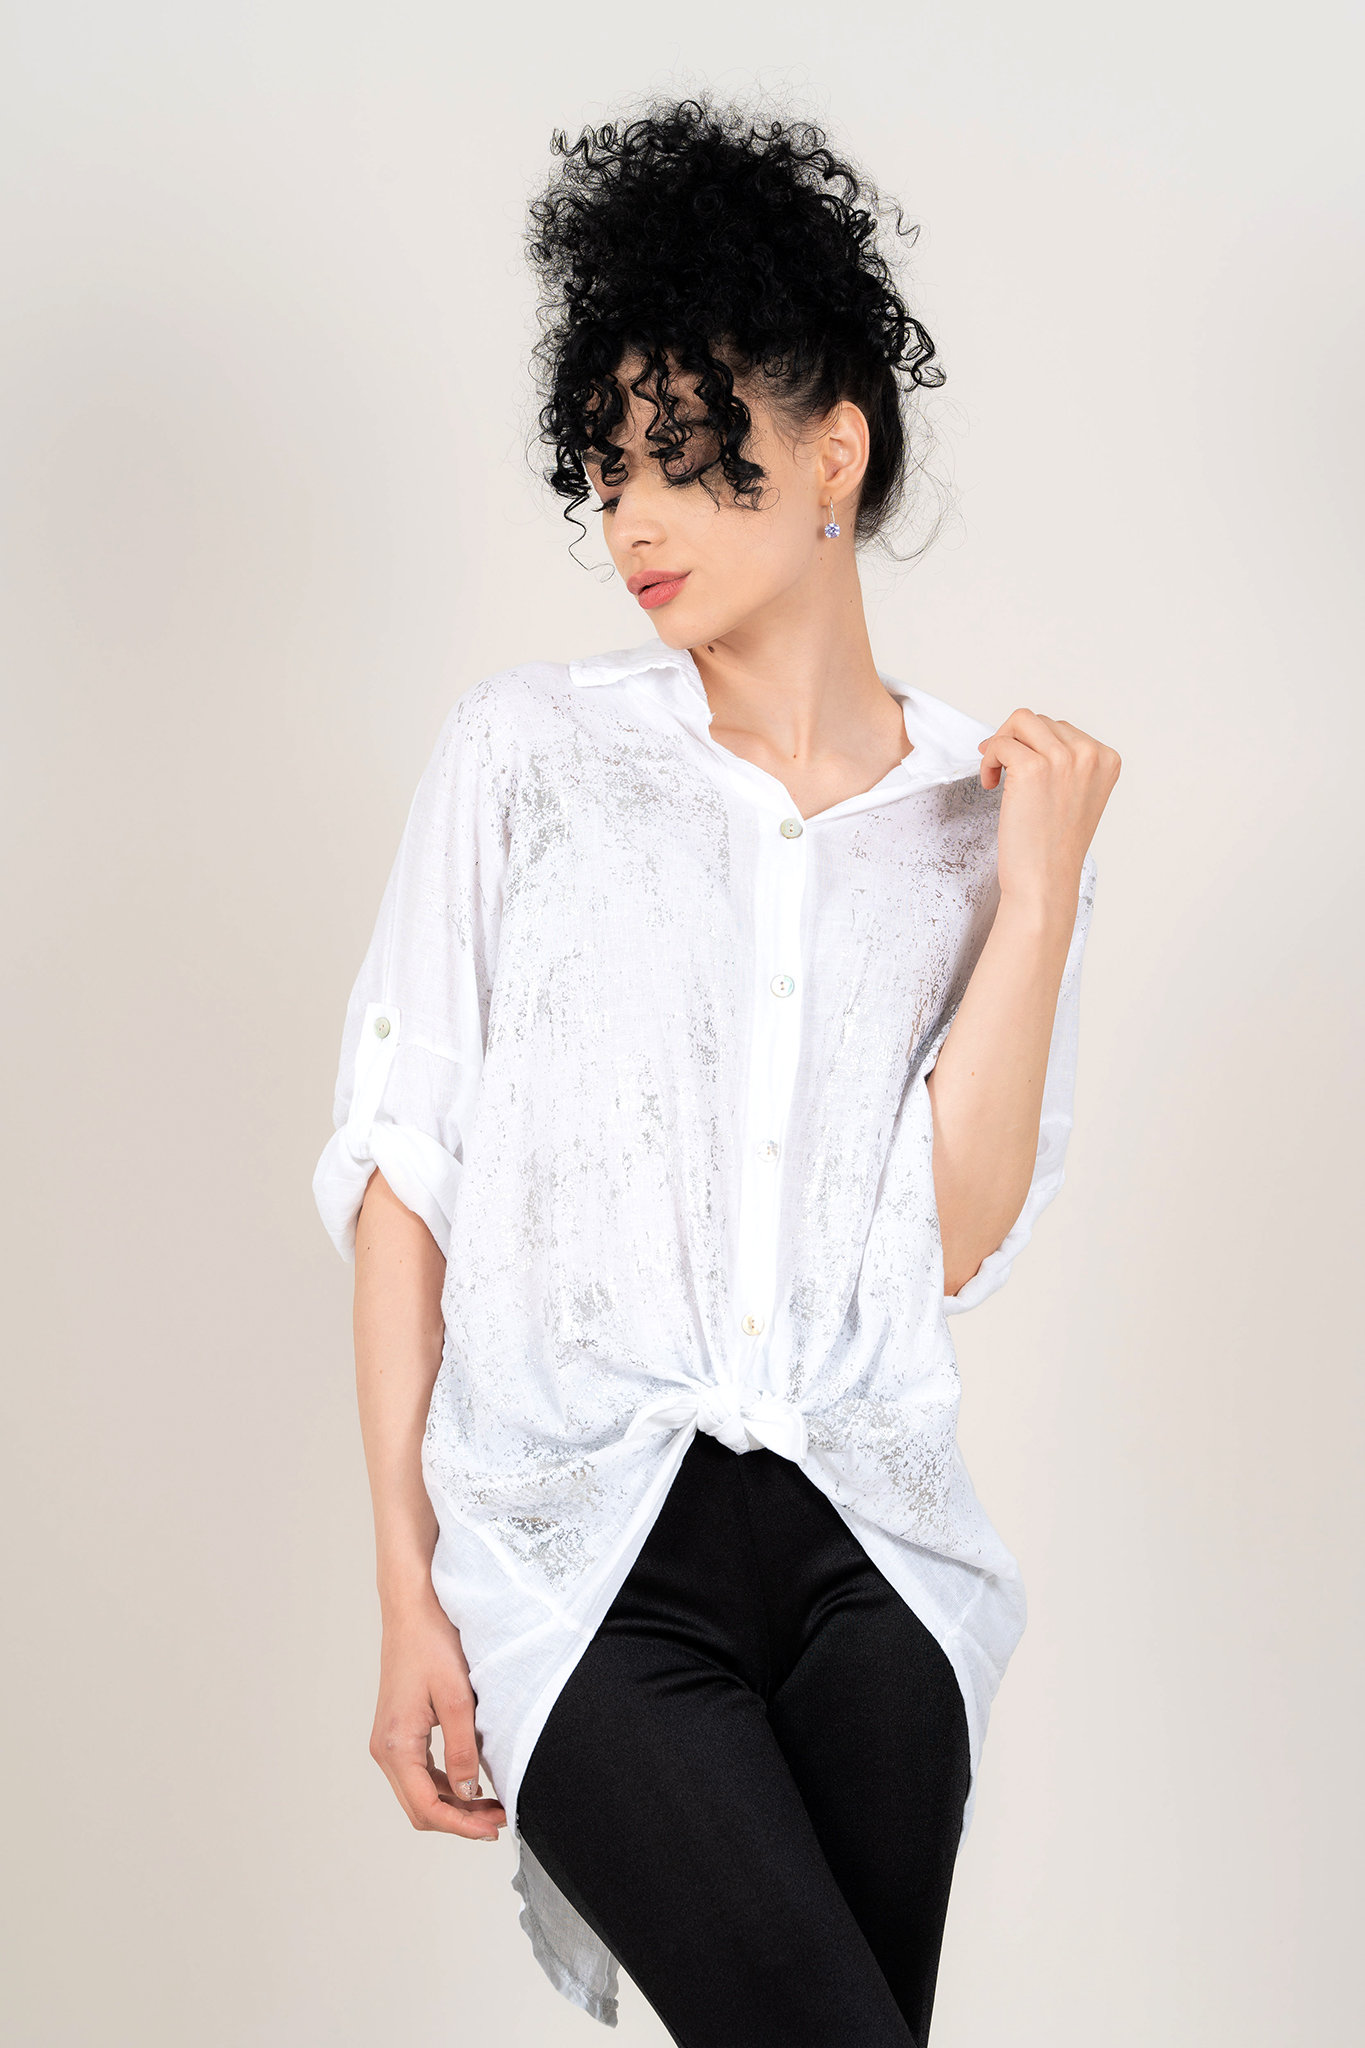 Дамска оувърсайз риза от лен и памук в бяло със сребристи акценти